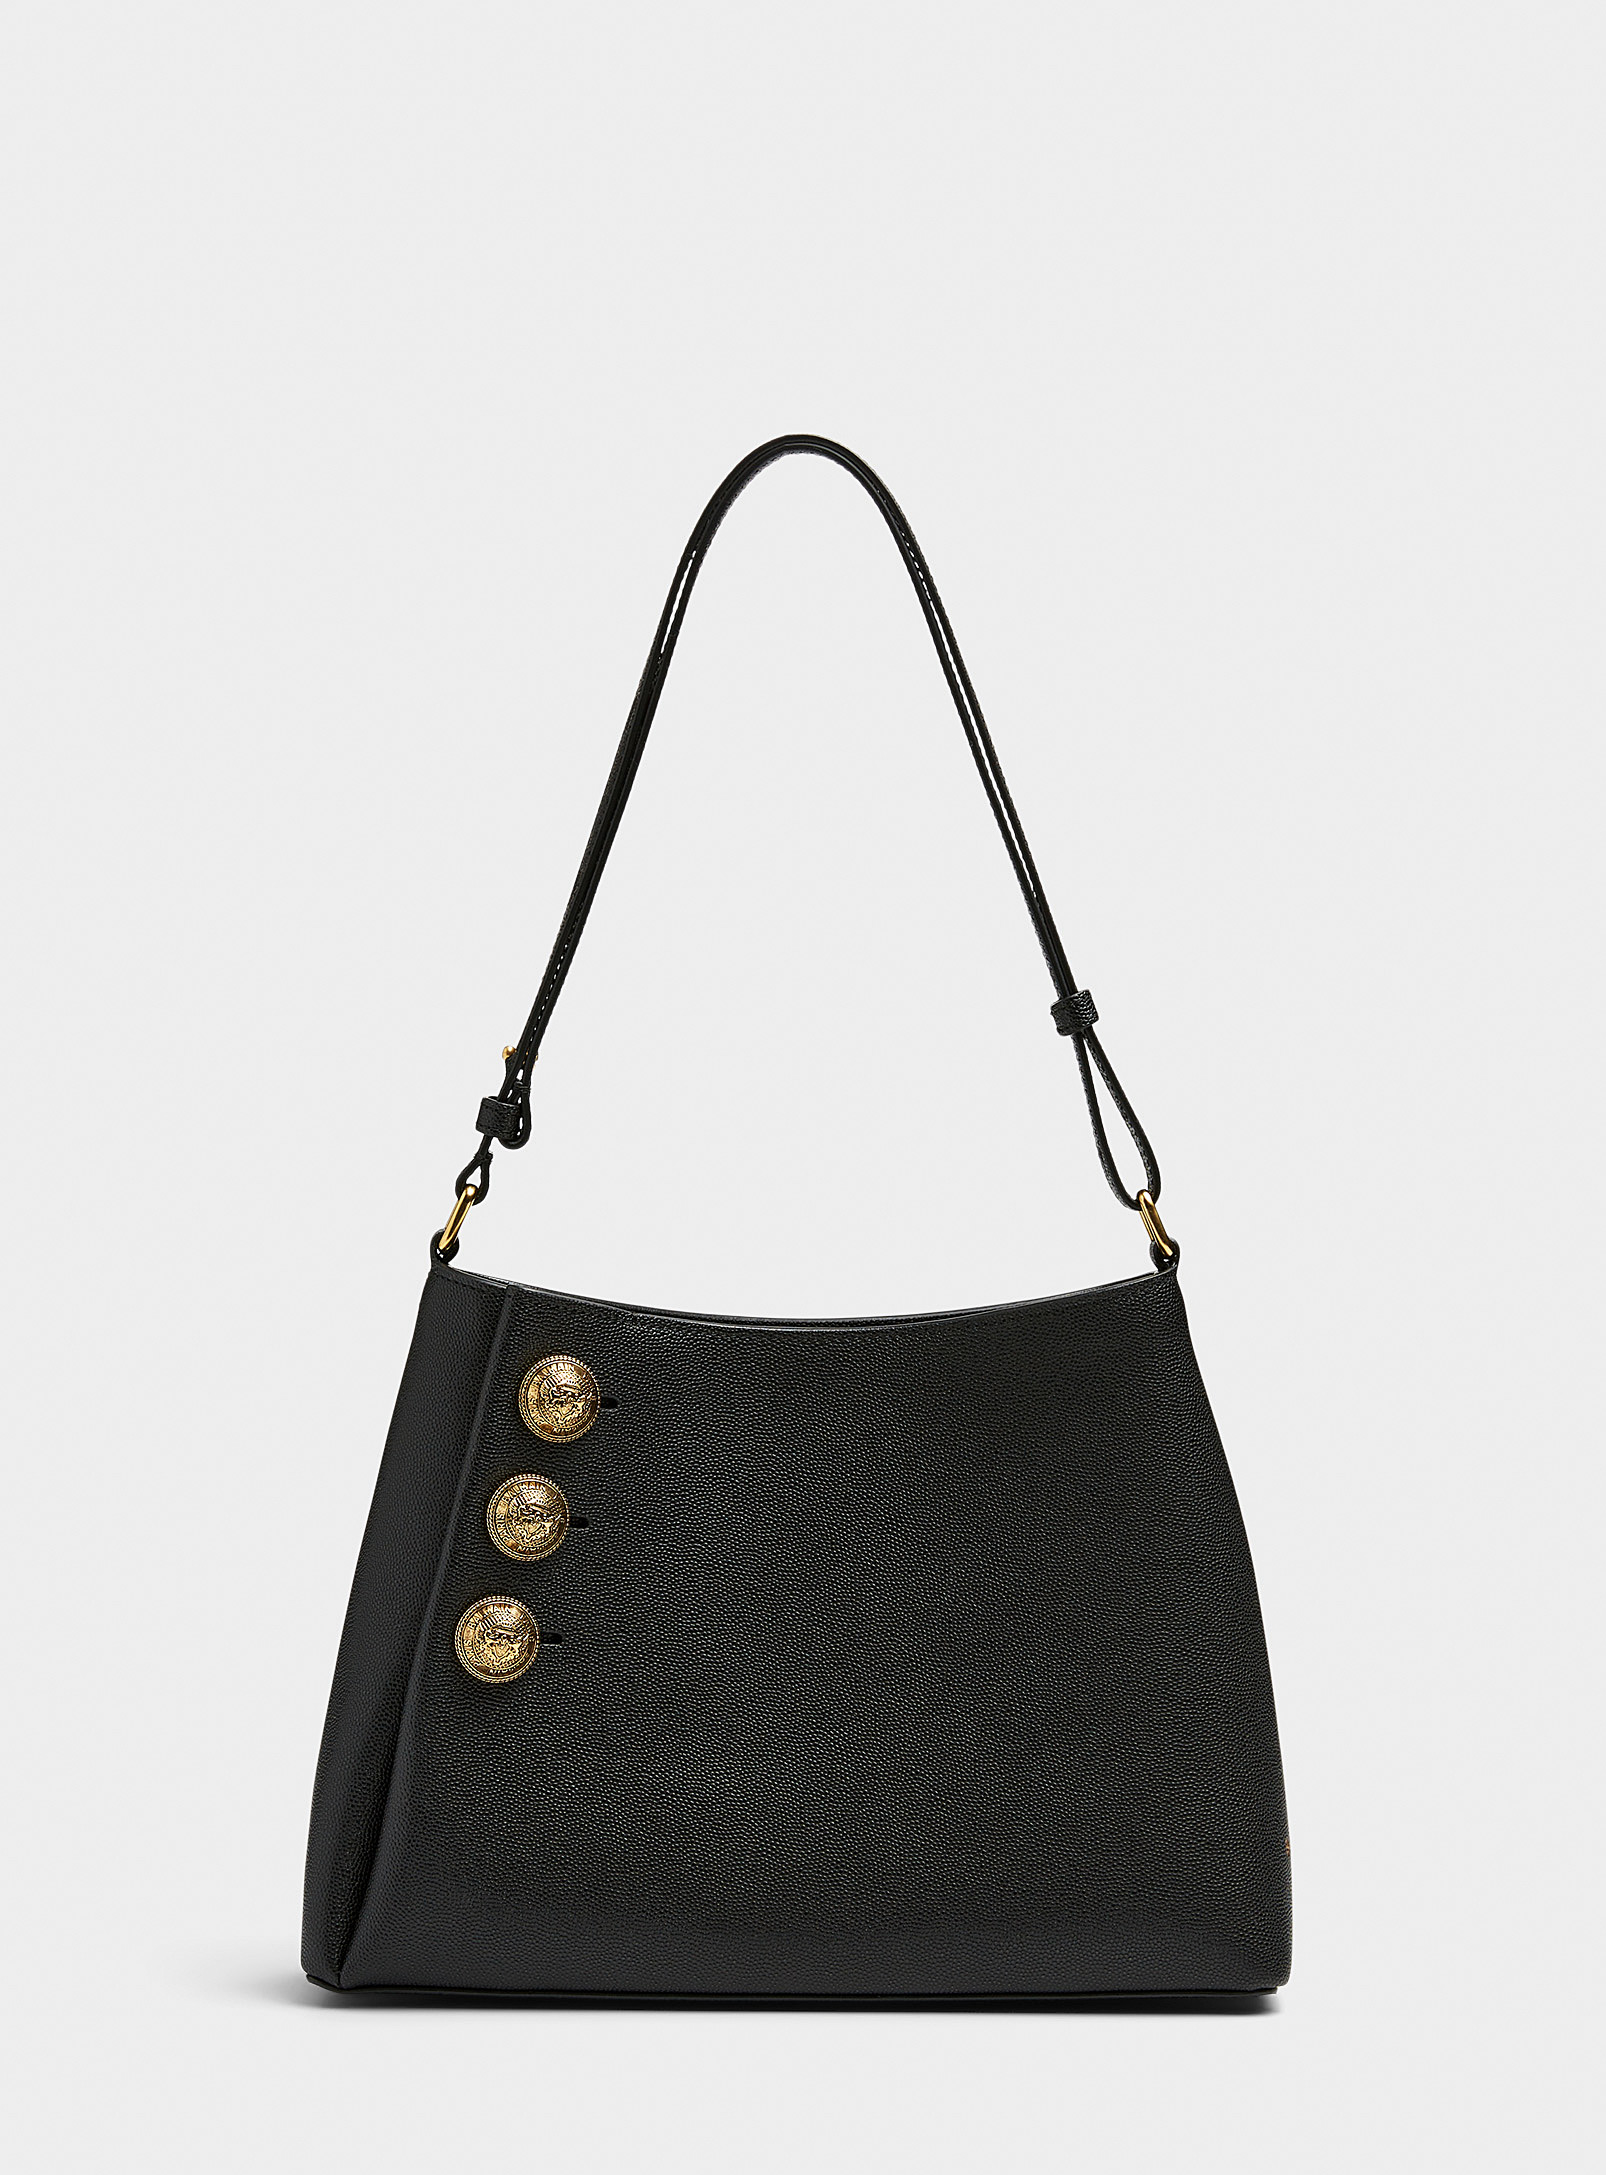 Balmain - Emblème grained leather bag